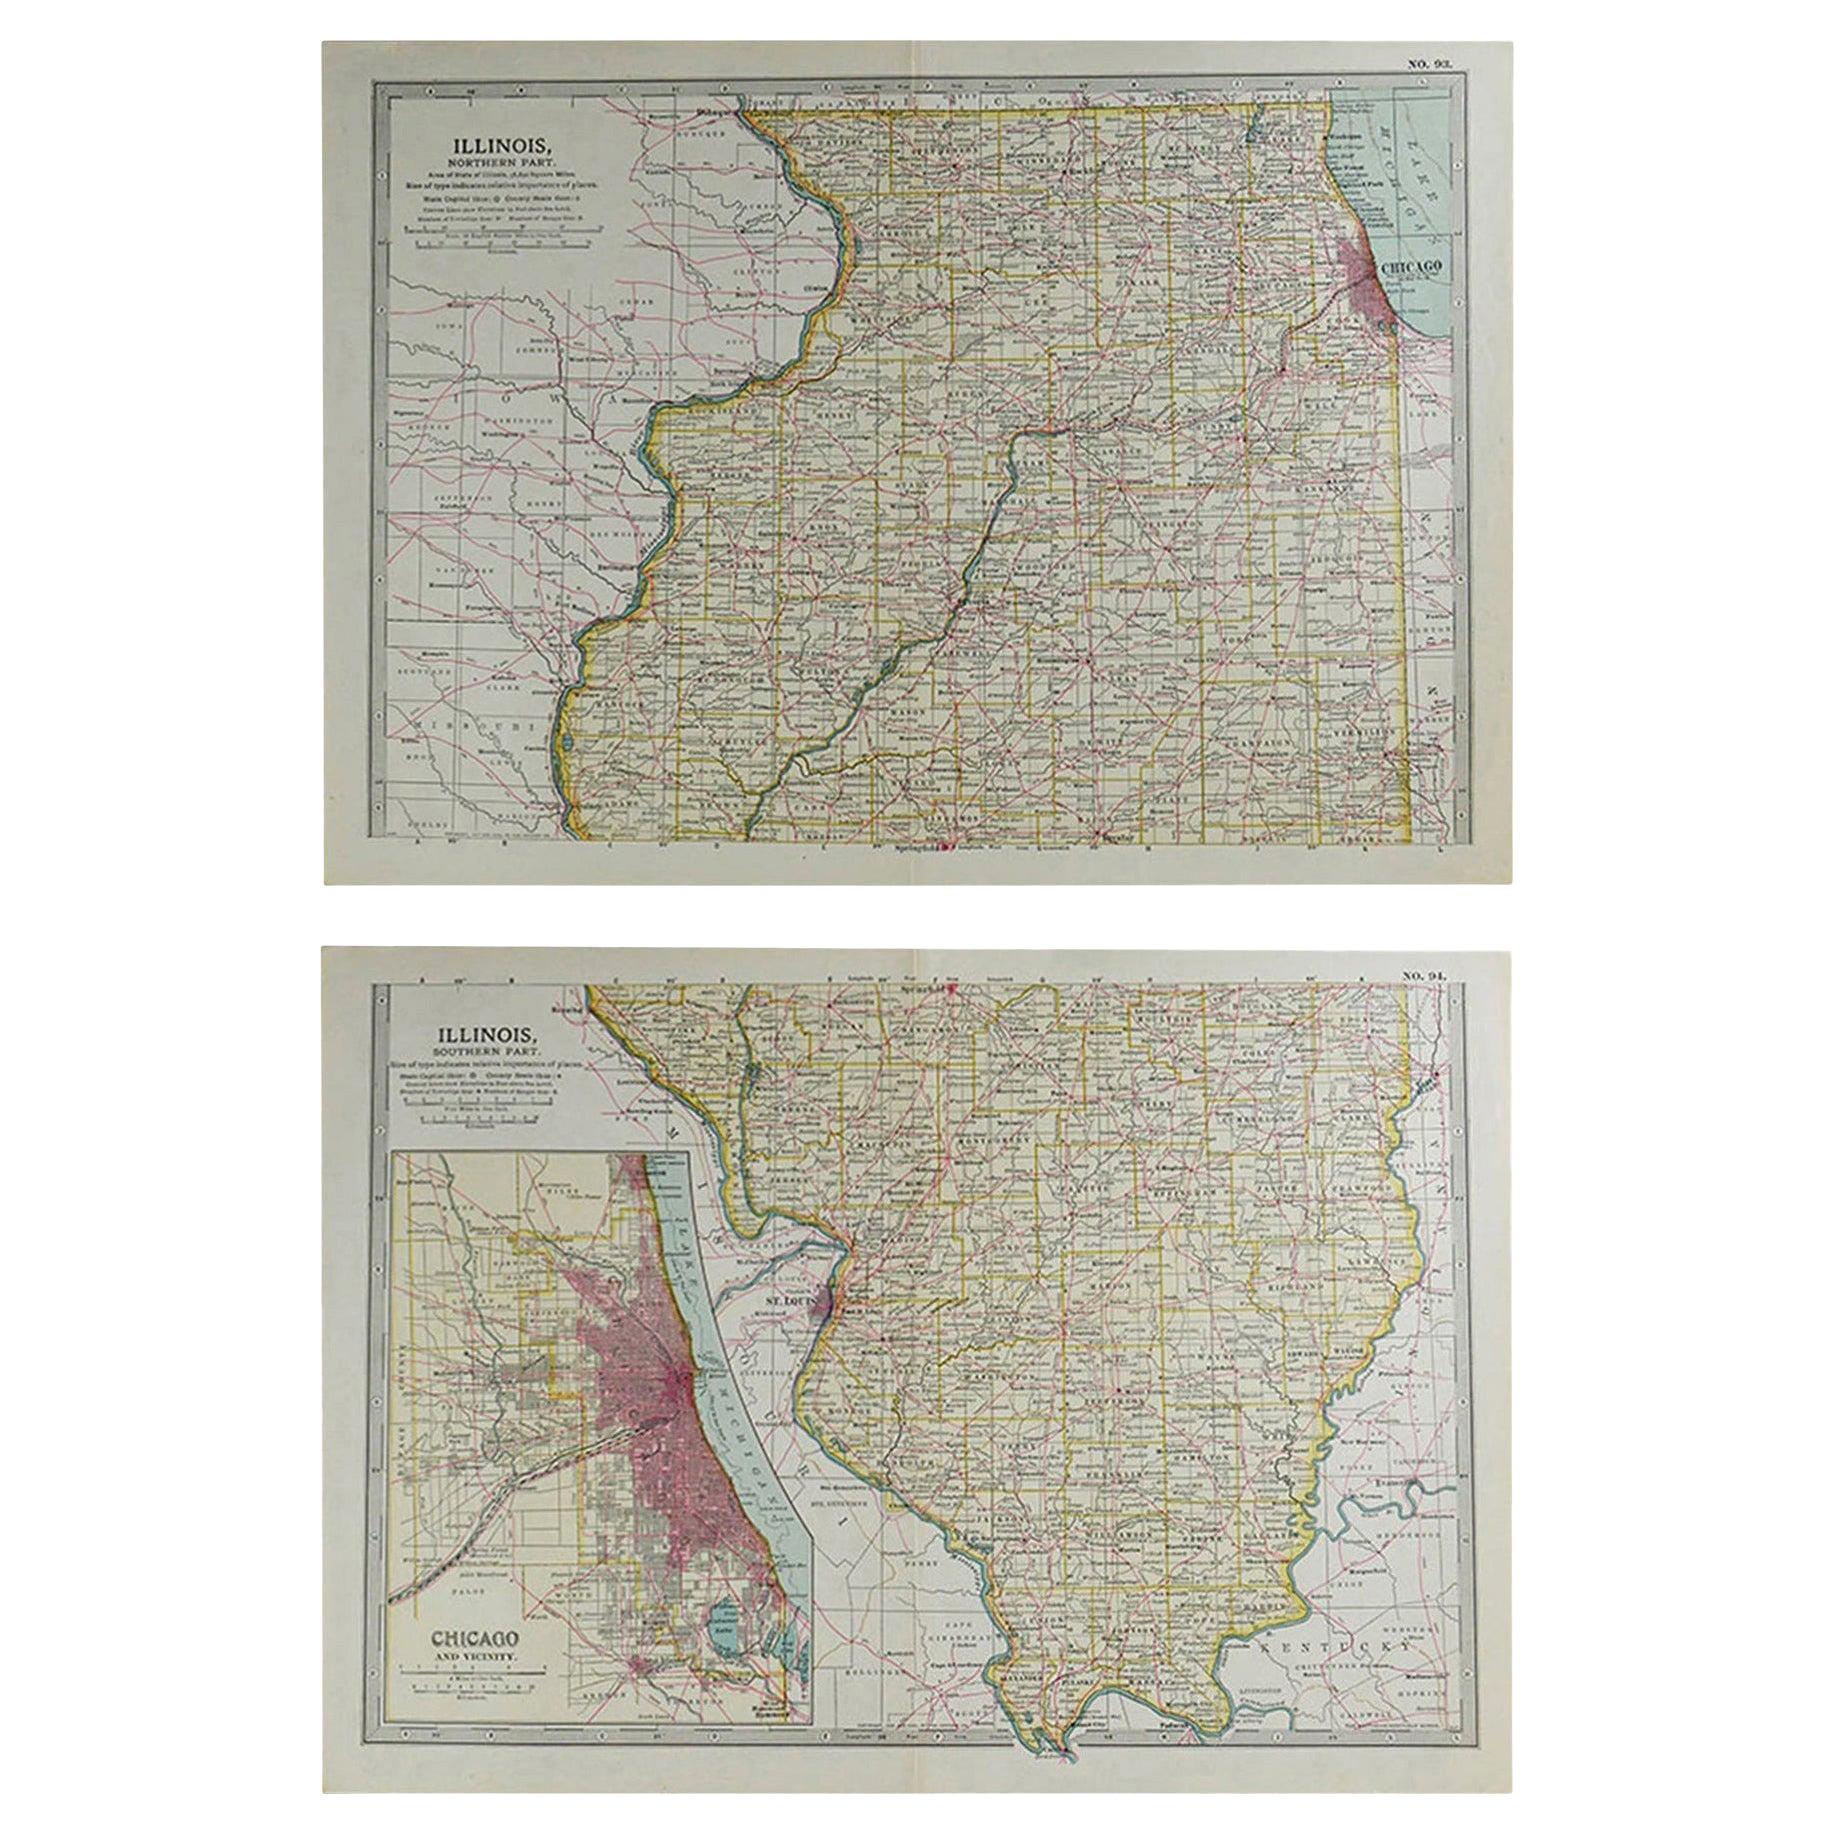 Original Antique Map of Illinois, circa 1890